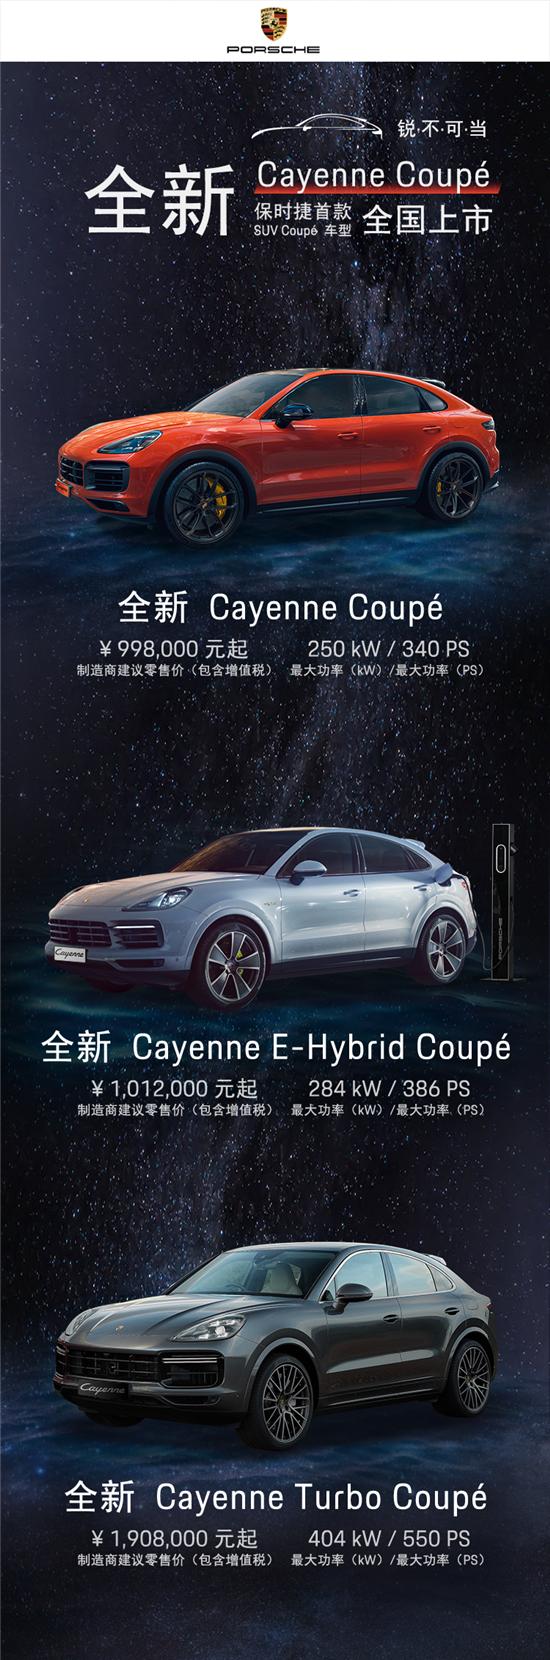 全新保时捷Cayenne Coupé上市 售价99.8万元起